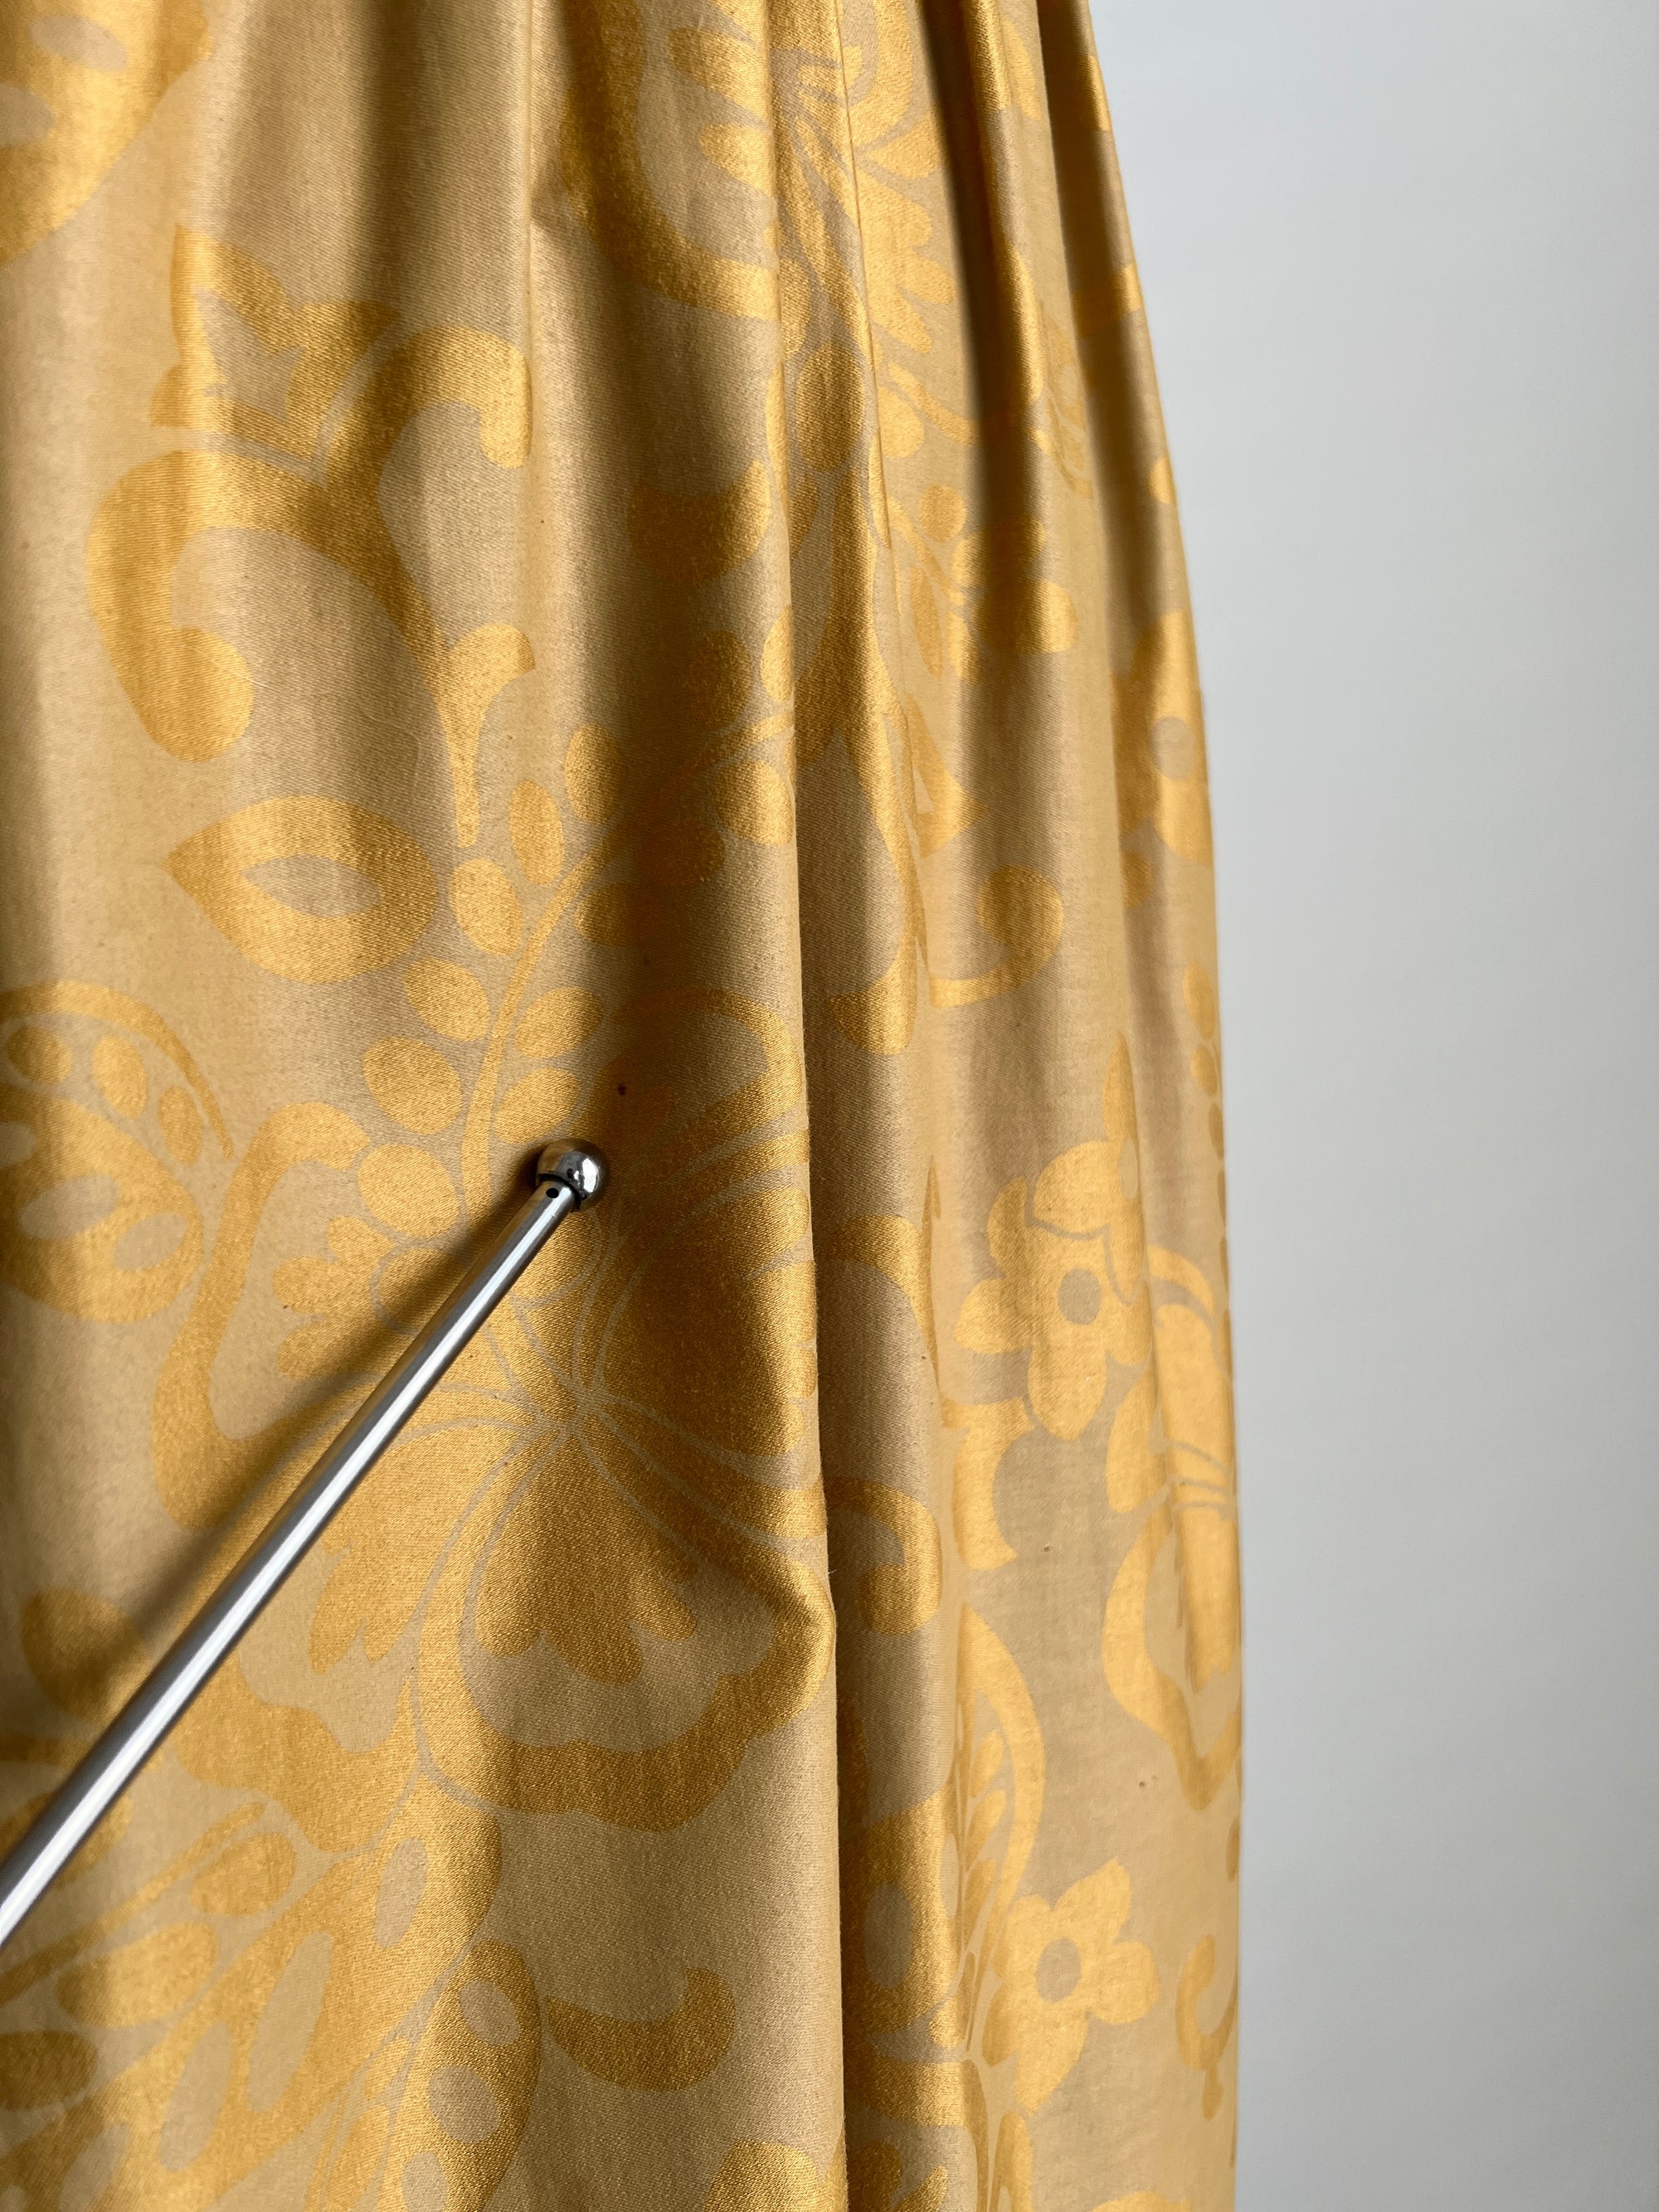 Vintage Regency Era 1800s Gold Emossed Dress / Bridgerton Inspired Dress / Small-Medium